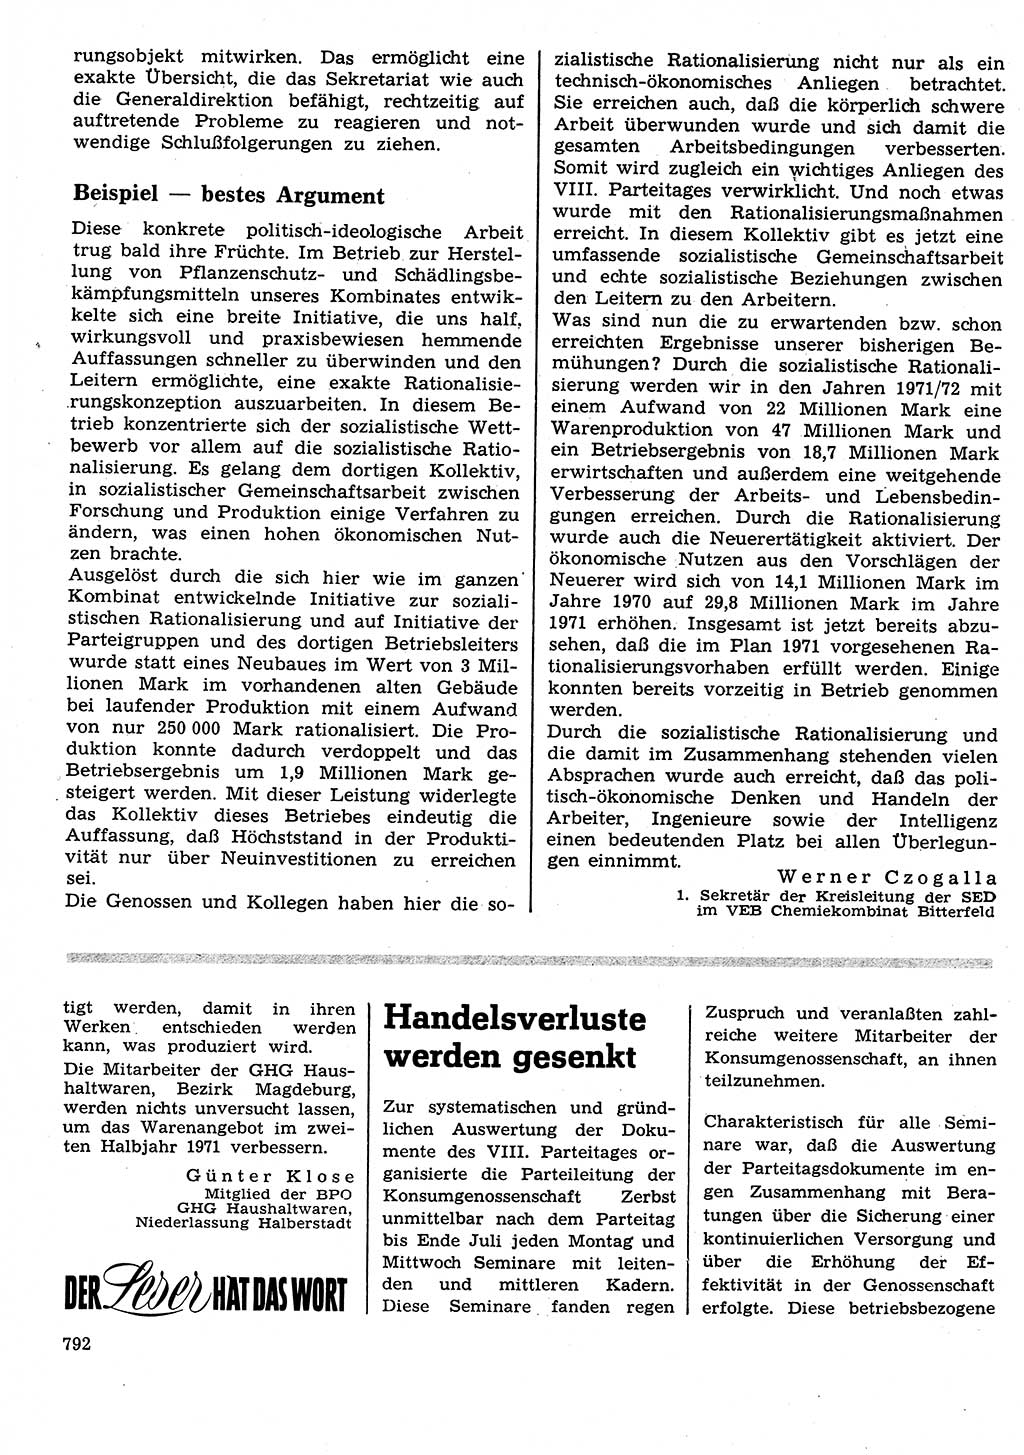 Neuer Weg (NW), Organ des Zentralkomitees (ZK) der SED (Sozialistische Einheitspartei Deutschlands) für Fragen des Parteilebens, 26. Jahrgang [Deutsche Demokratische Republik (DDR)] 1971, Seite 792 (NW ZK SED DDR 1971, S. 792)